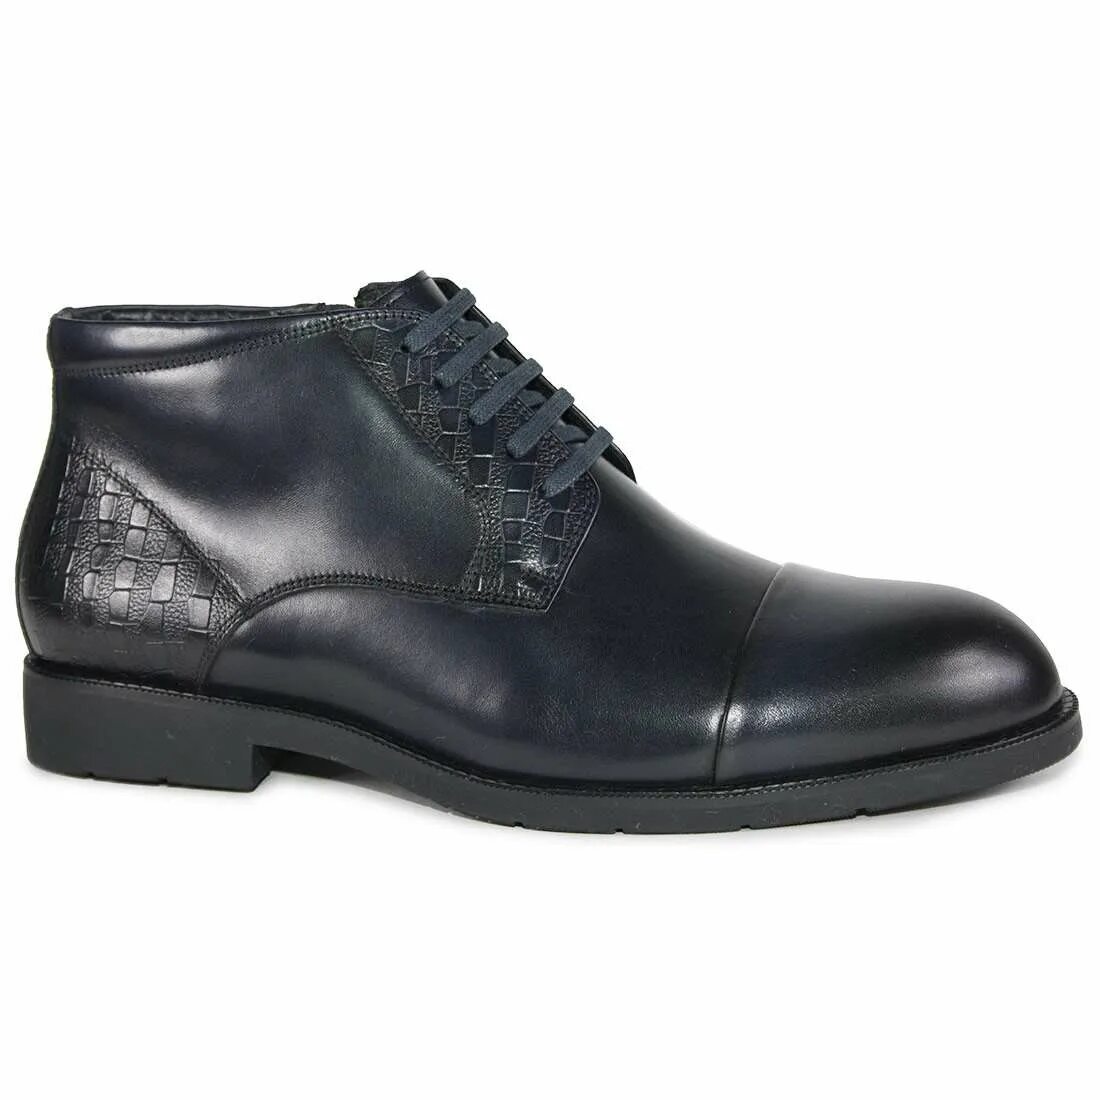 Обувь кожи купить в москве. Мужские зимние ботинки MP 7598815 BLK. Ботинки мужские Richard 083305чнб. Мужские туфли VV Cat в705сф. Zet-obuv ботинки мужские #673.